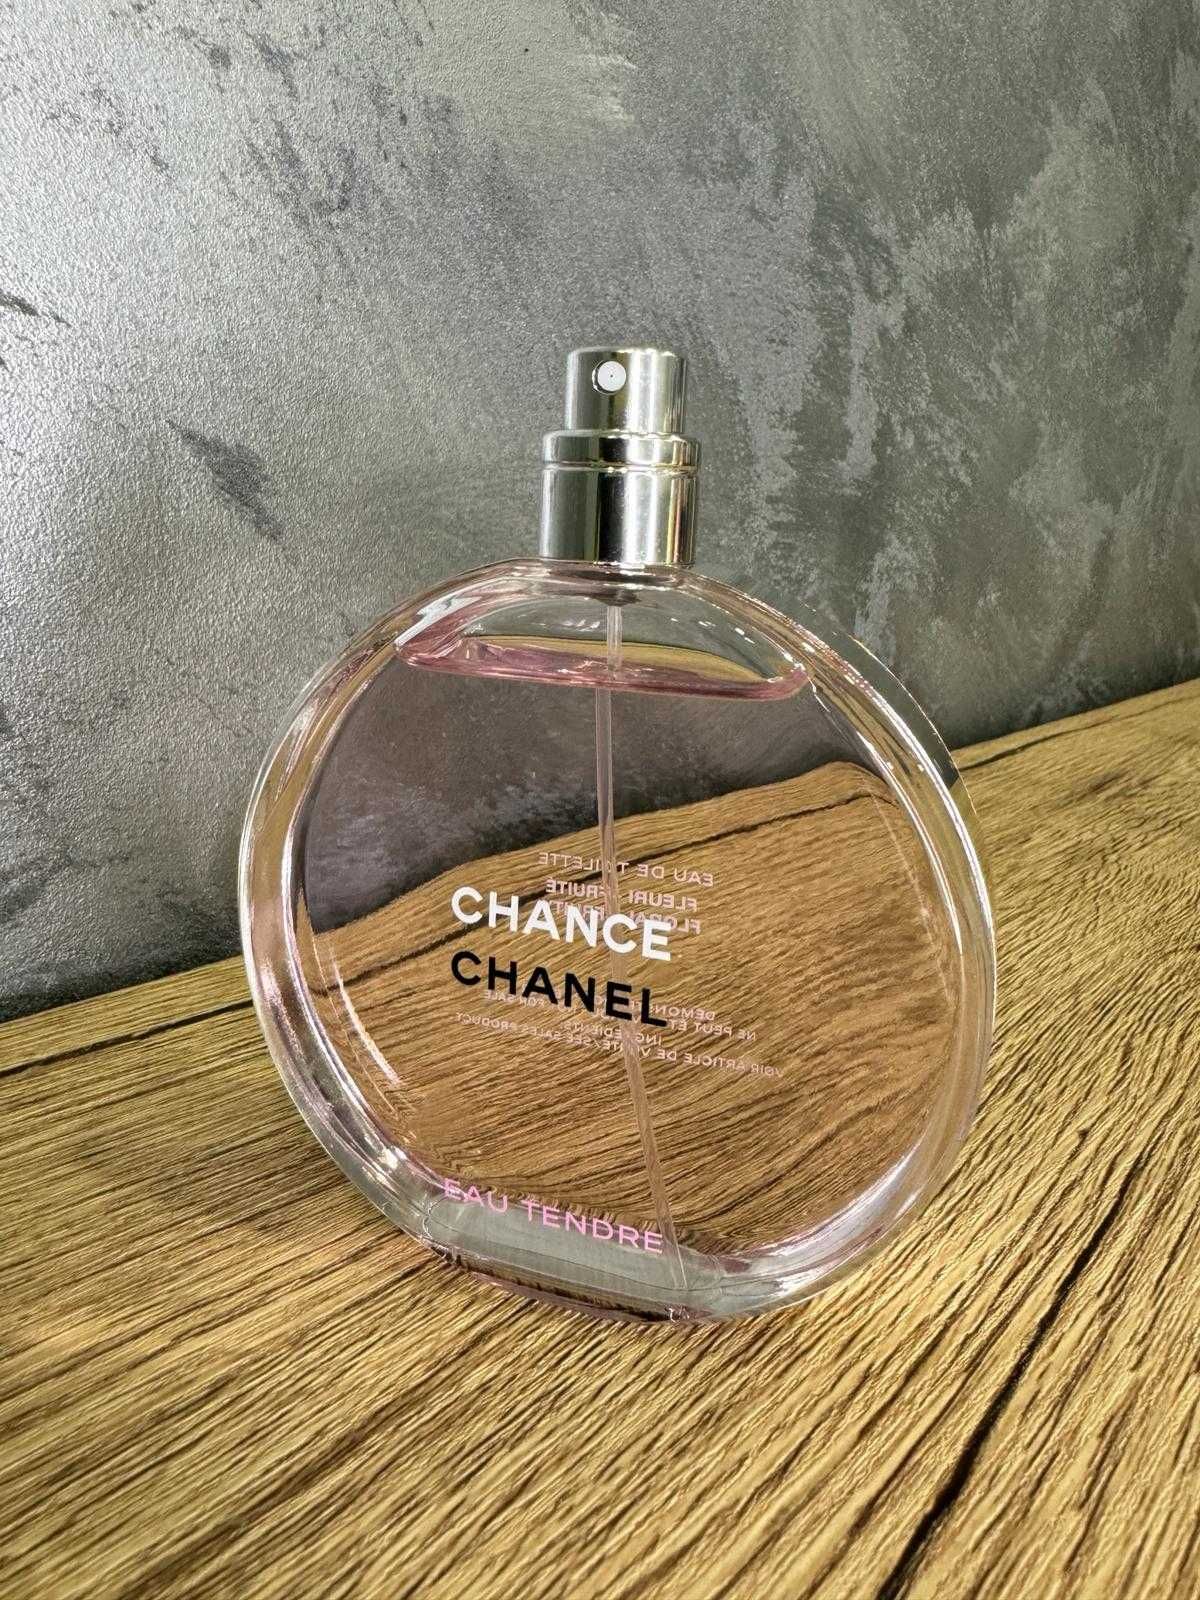 Chanel Chance Eau Tendre EDT 100ml, original, batch code verificabil